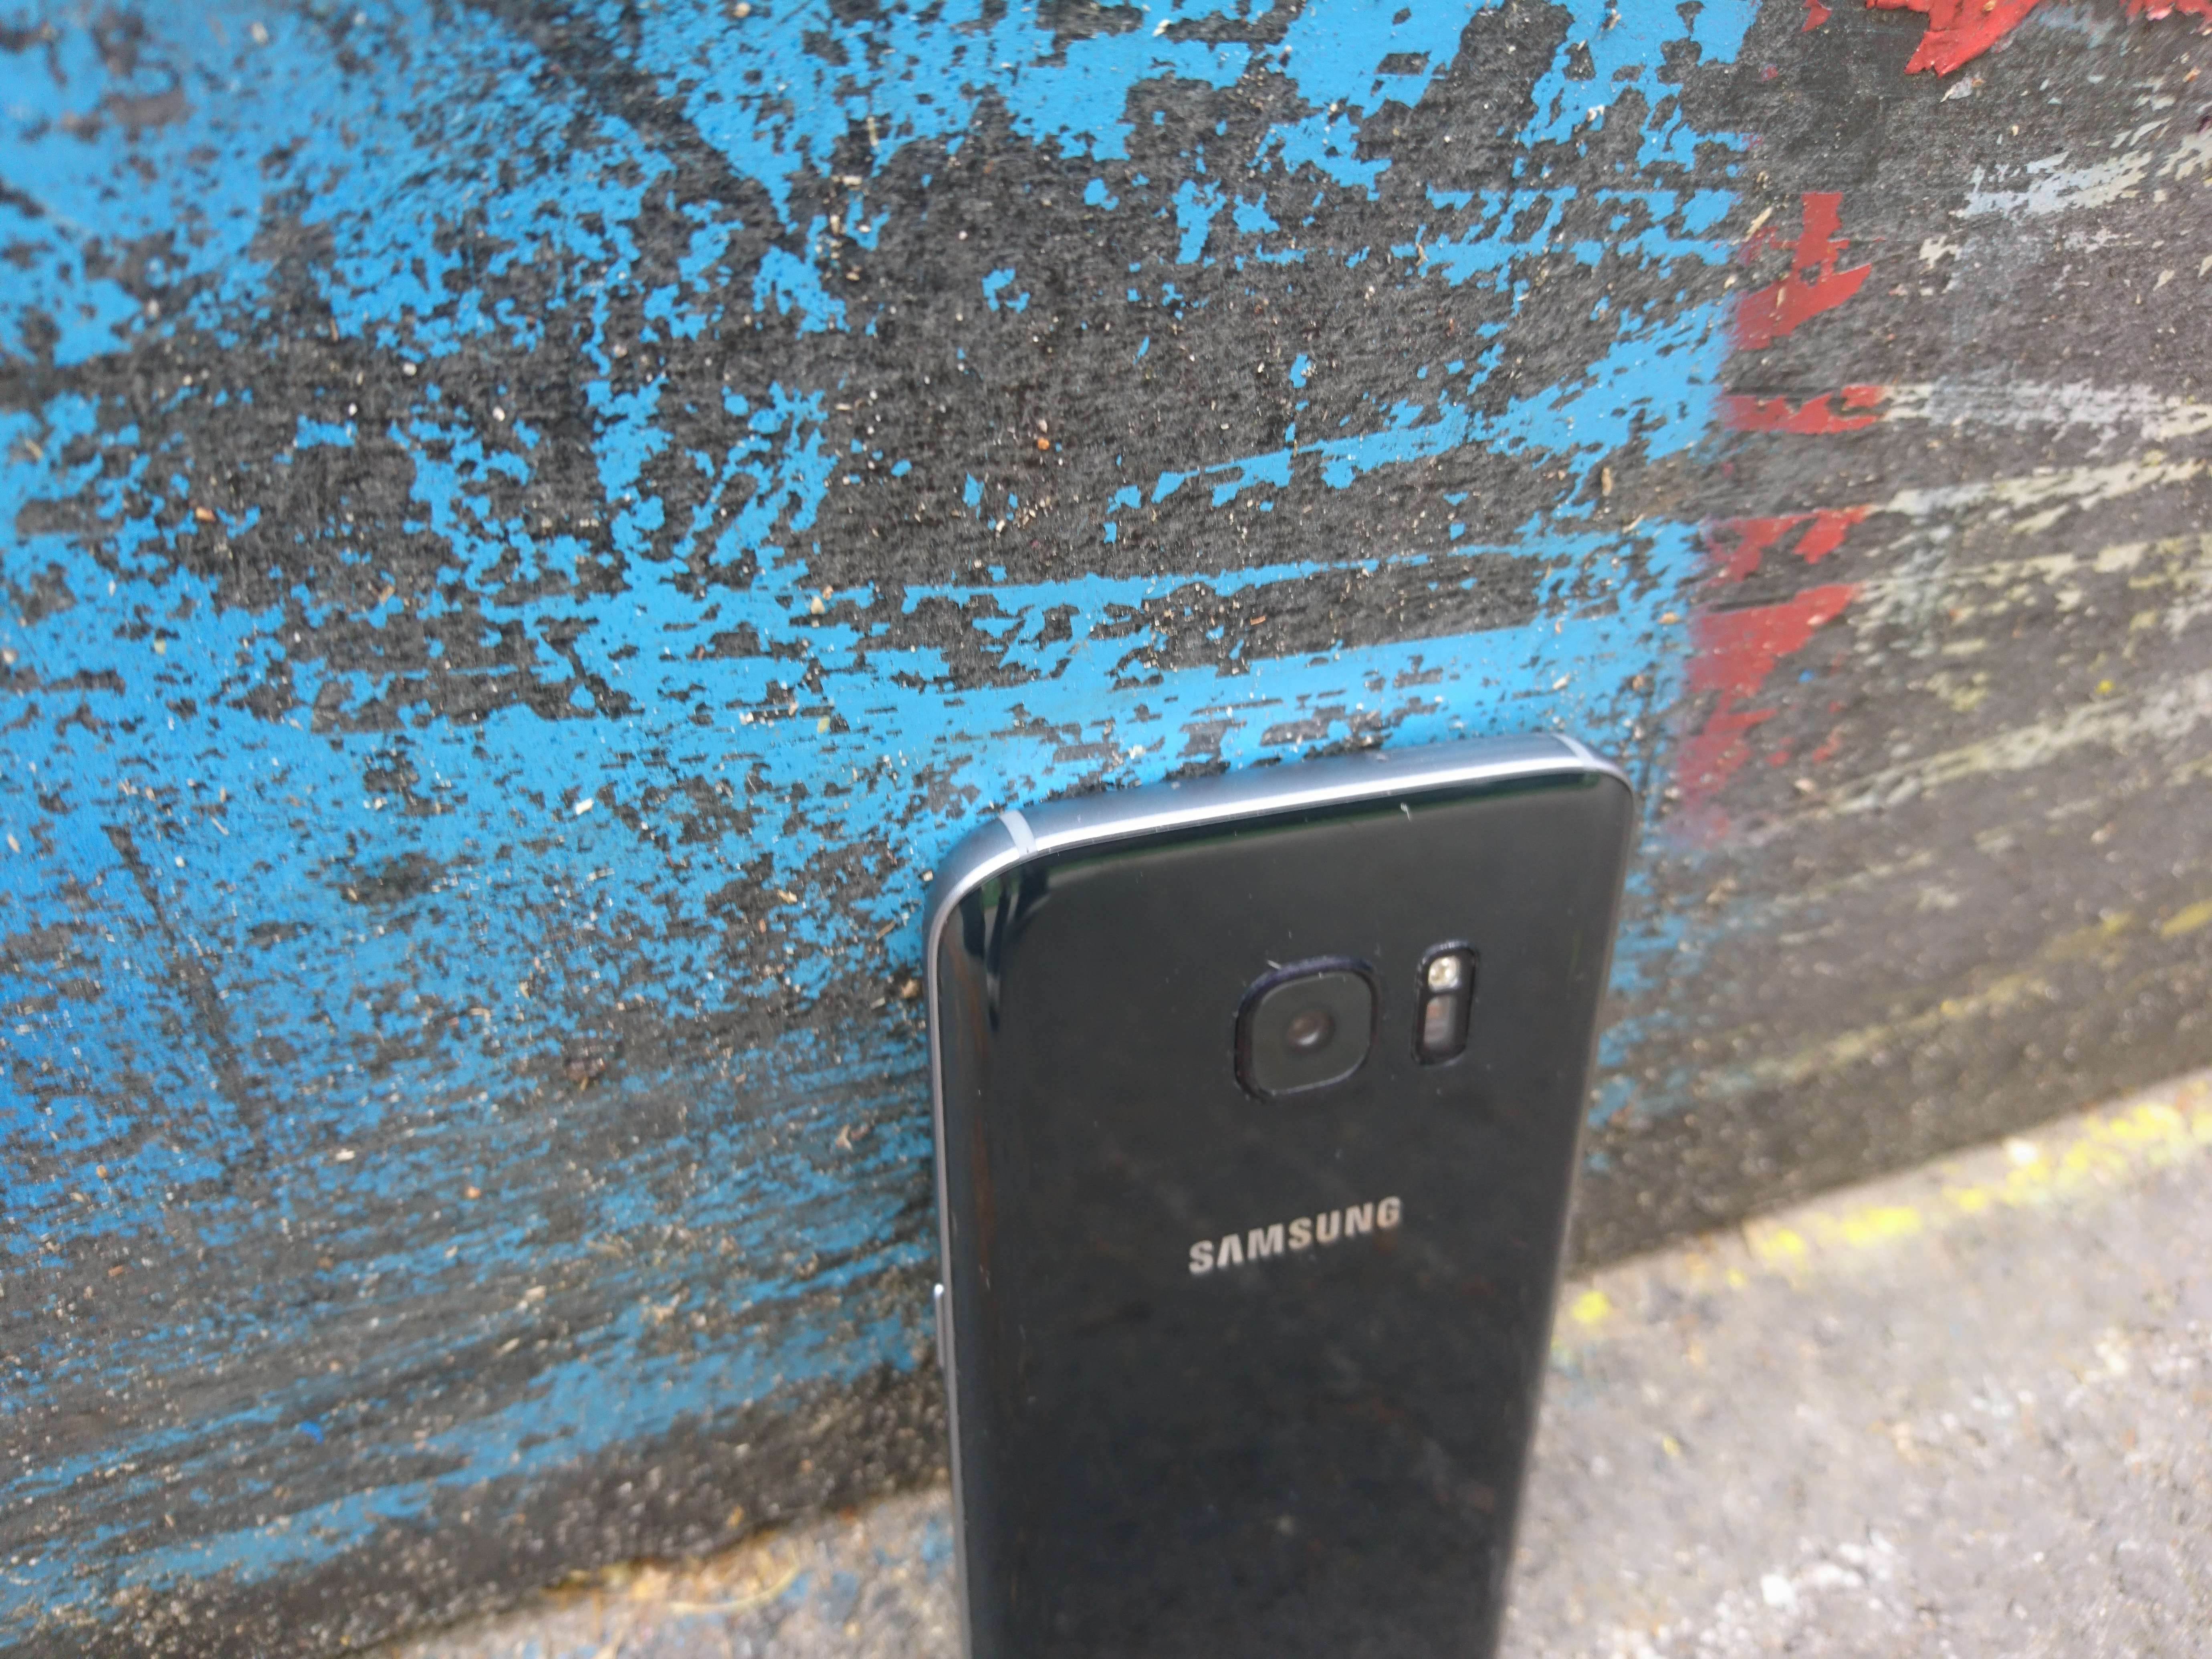 Samsung Galaxy S7 - test i recenzja urządzenia recenzje, polecane zalety, Wideo, wady, test i recenzja Samsung Galaxy S7, Samsung Galaxy S7, recka, recenzja Samsung Galaxy S7, Recenzja, polska recenzja Samsung Galaxy S7, galaxy s7, cena, aparat  Pamiętam, jak oglądałem na żywo premierę Galaxy S7/S7 Edge i częściowo byłem zachwycony nowym produktem lidera rynku mobilnego, ale najbardziej zdenerwował mnie fakt, że nie poczyniono drastycznych zmian we wzornictwie urządzenia. DSC 0016